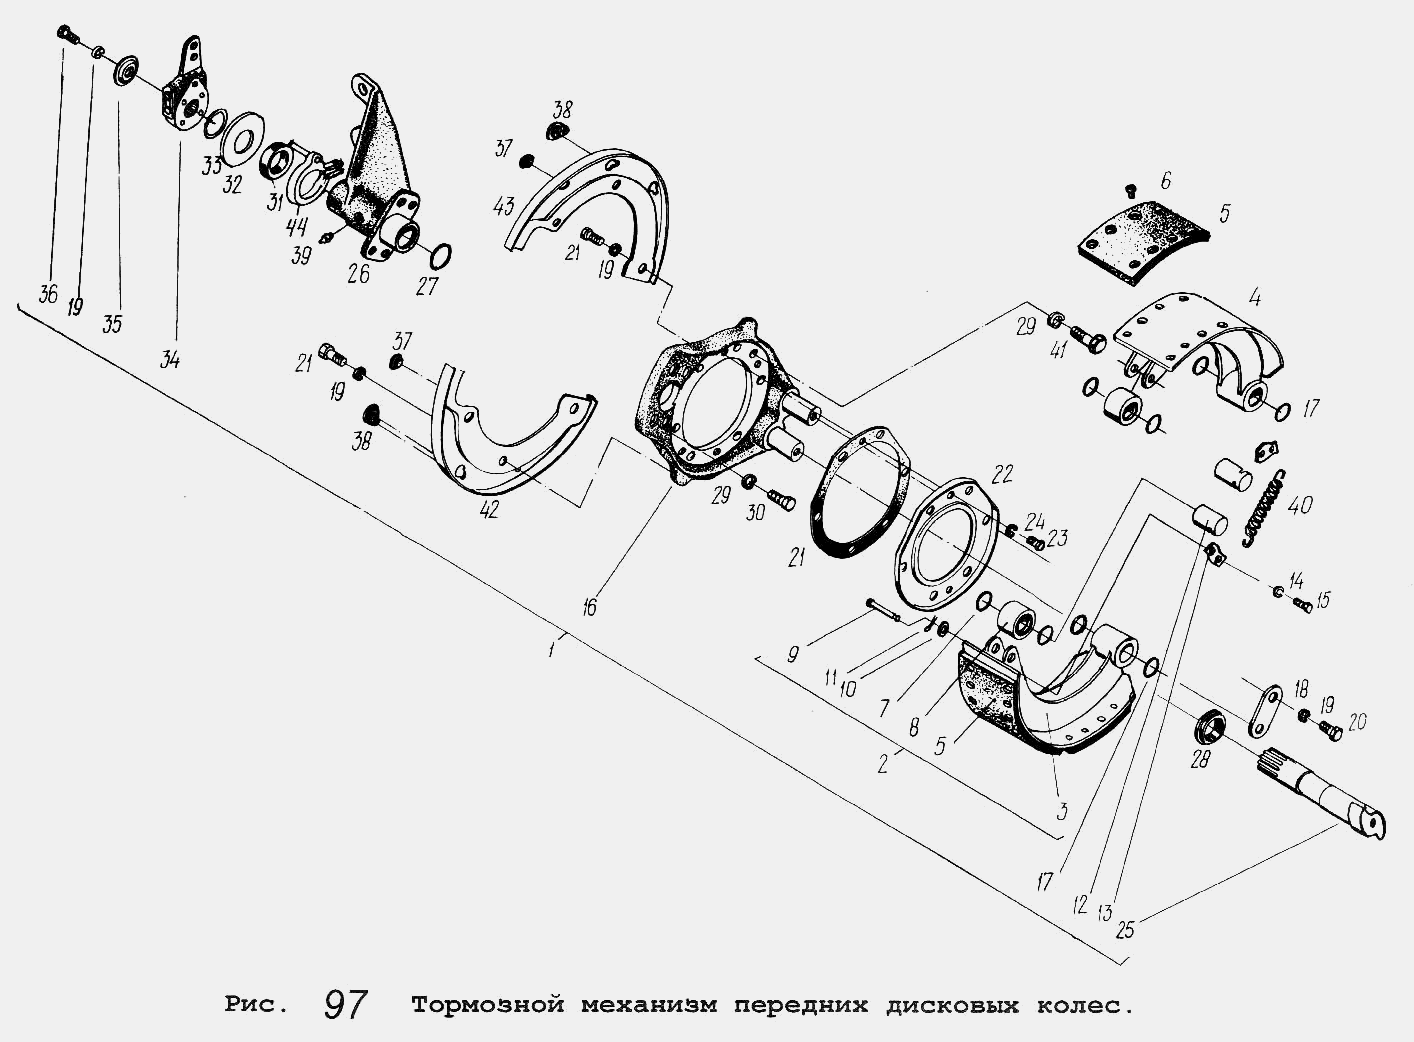 Тормозной механизм передних дисковых колес МАЗ  -  общий  каталог